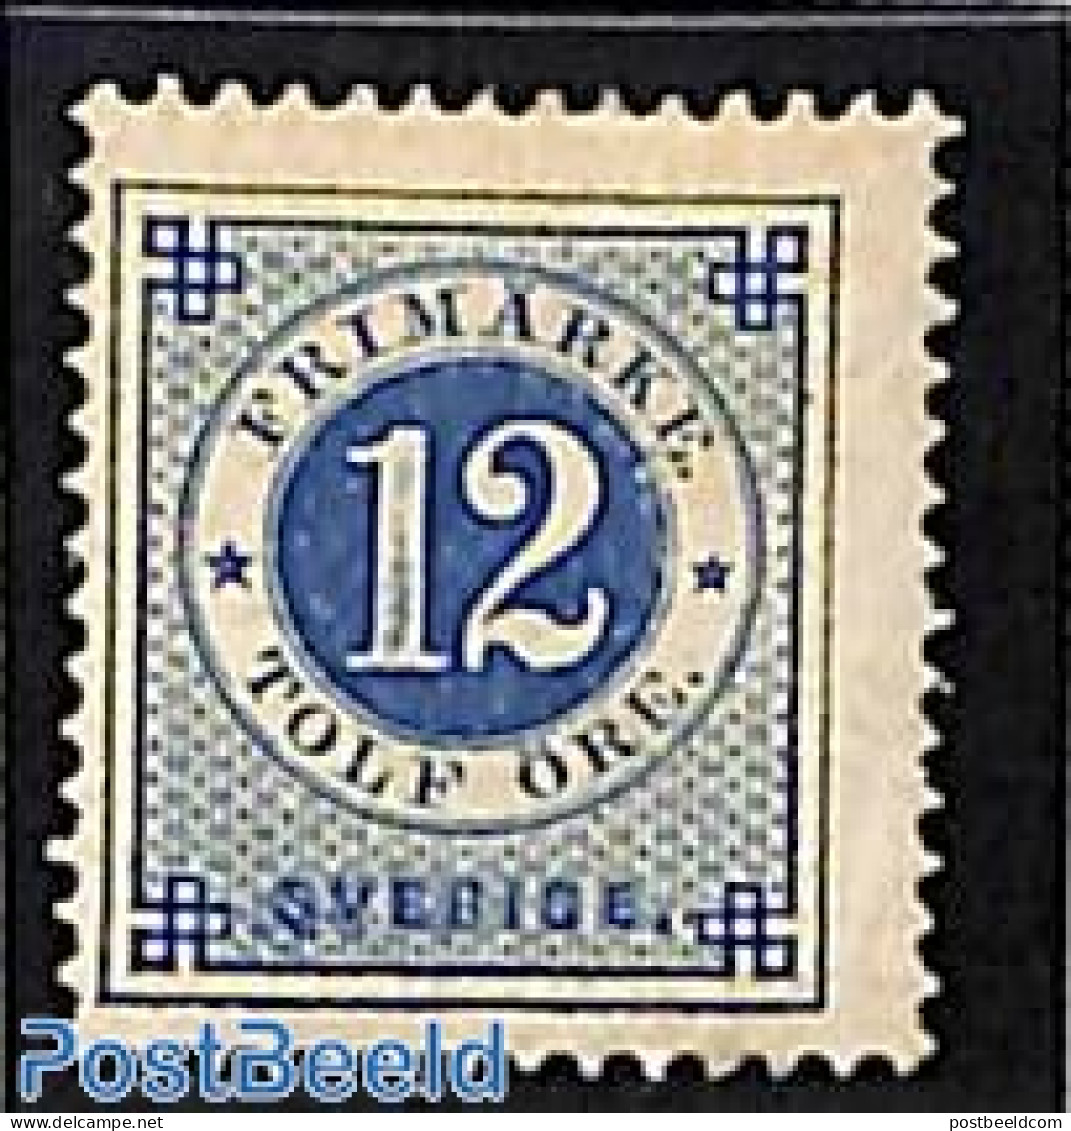 Sweden 1877 12o, Perf. 13, Unused, Unused (hinged) - Neufs